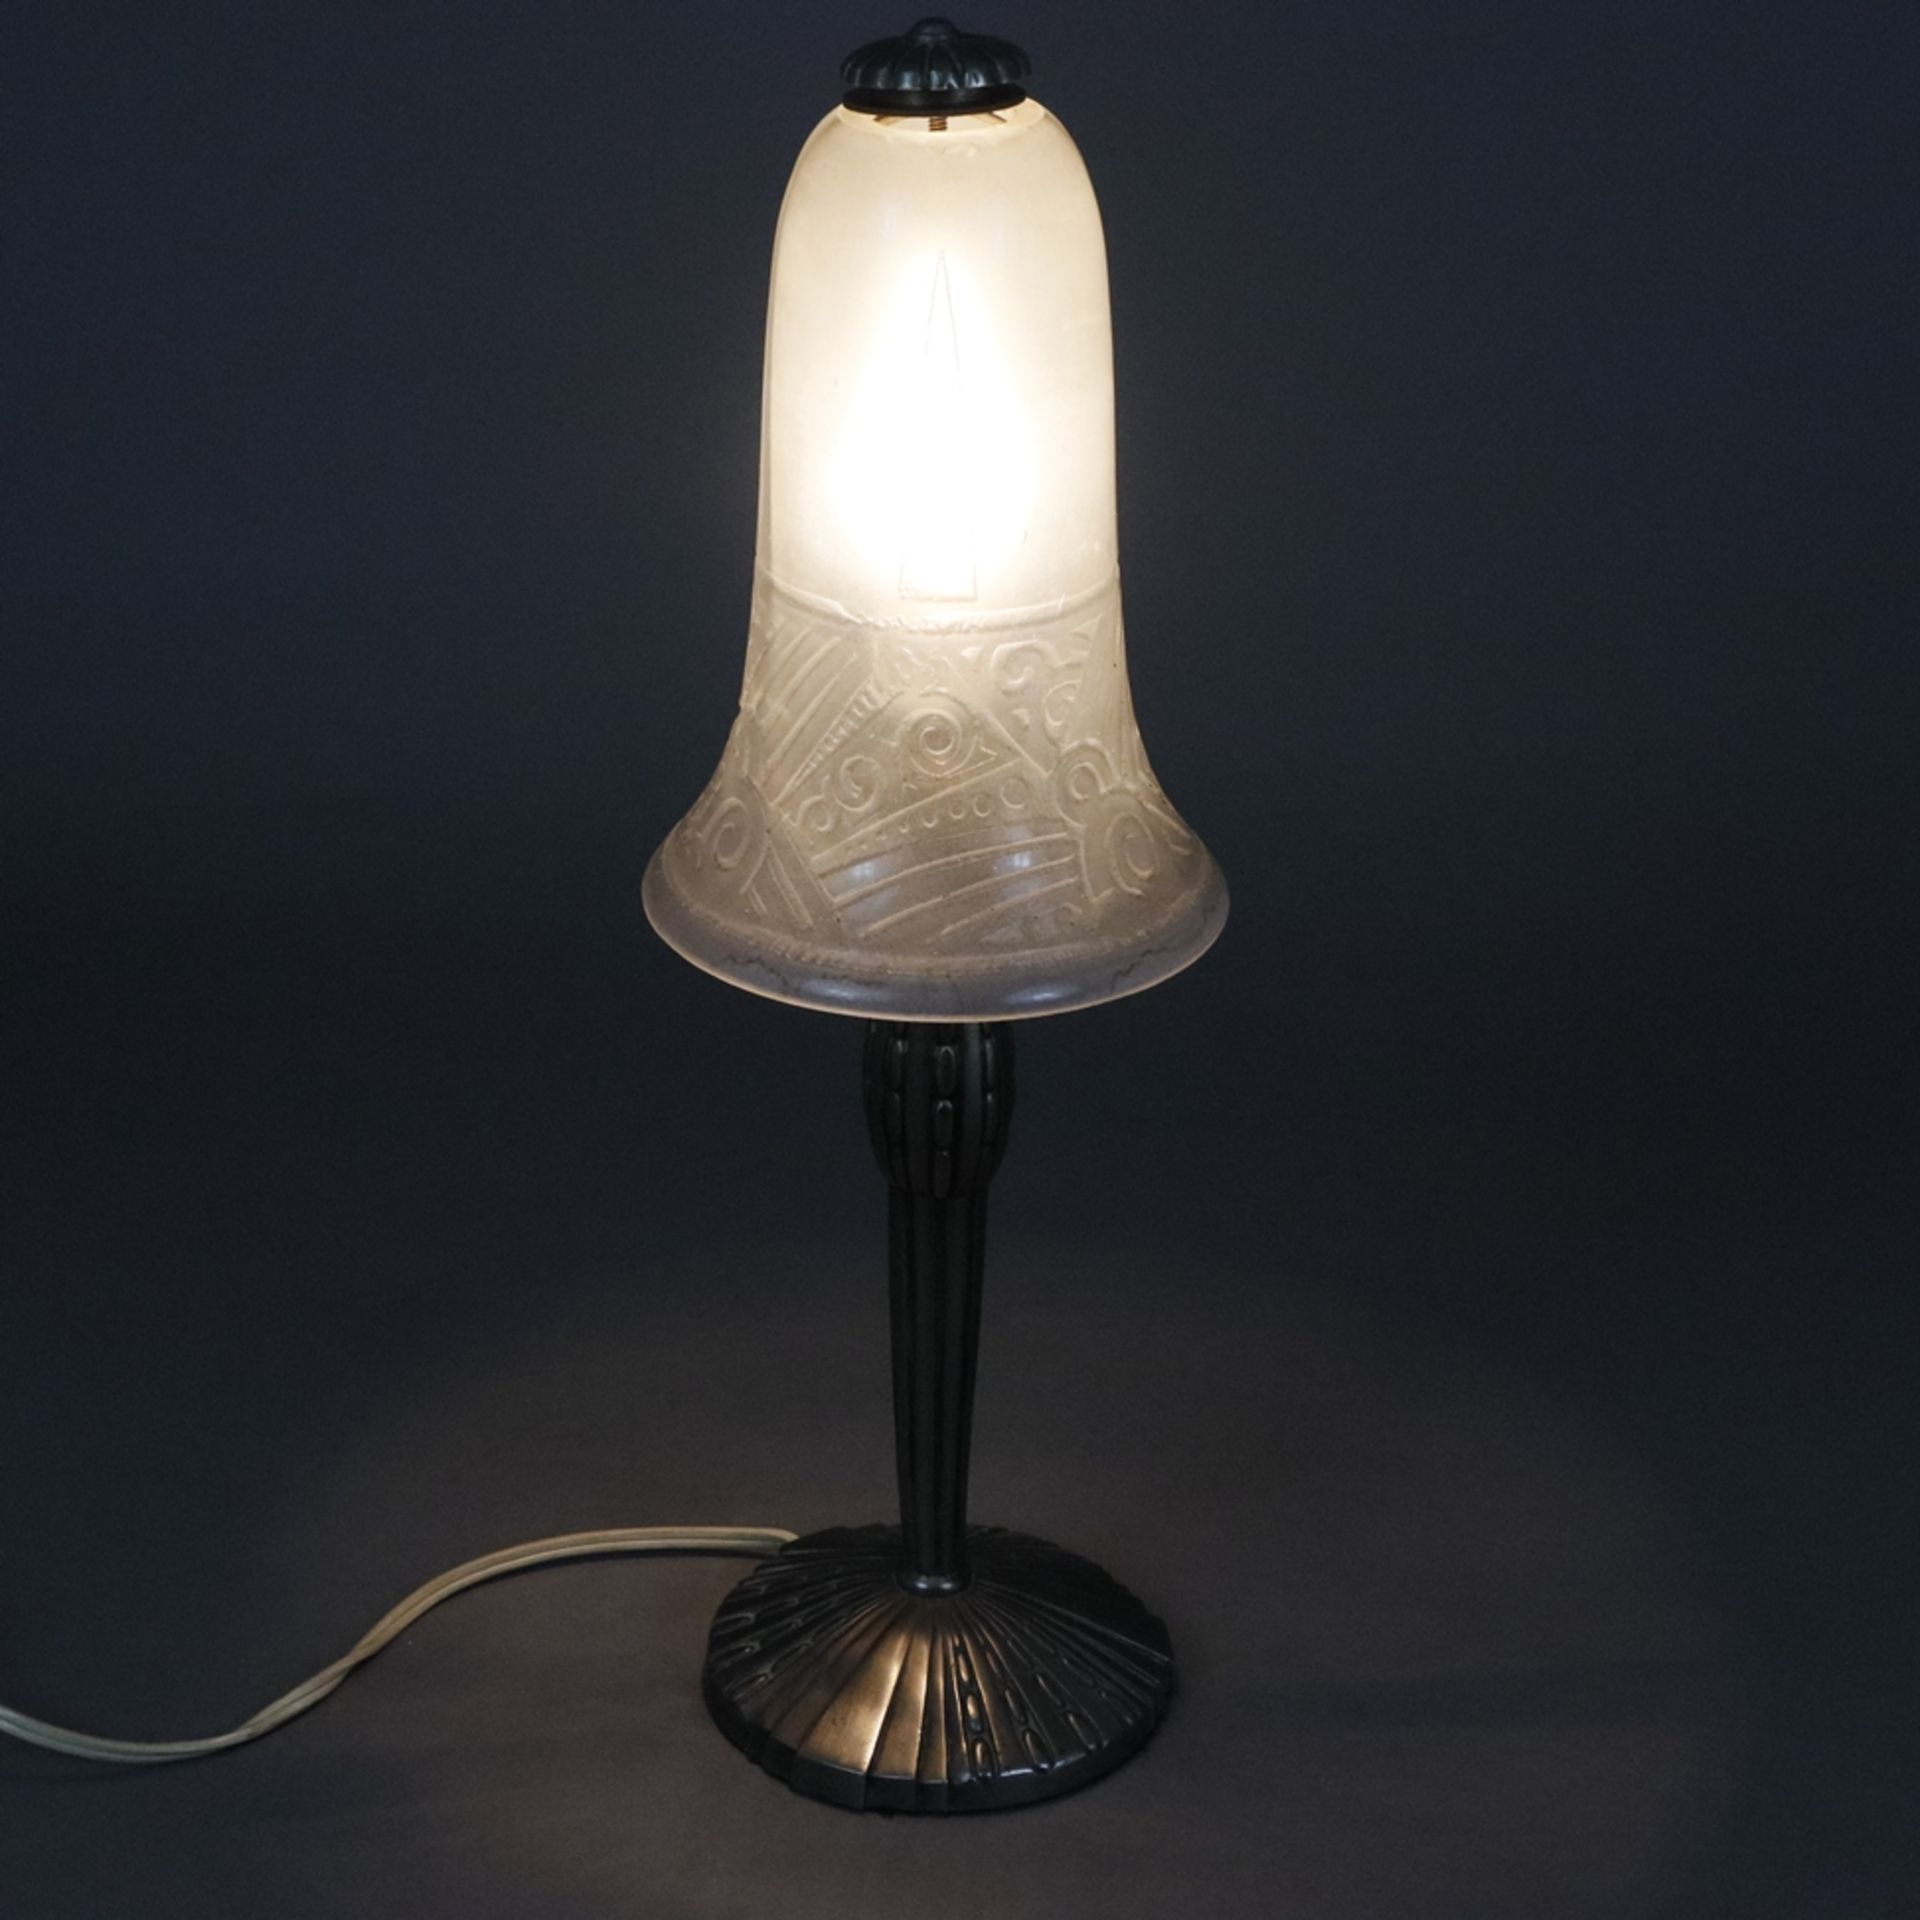 Art Déco-Tischlampe - Frankreich um 1920/30, runder reliefierter Metallfuß, glockenförmiger Lampens - Image 9 of 9